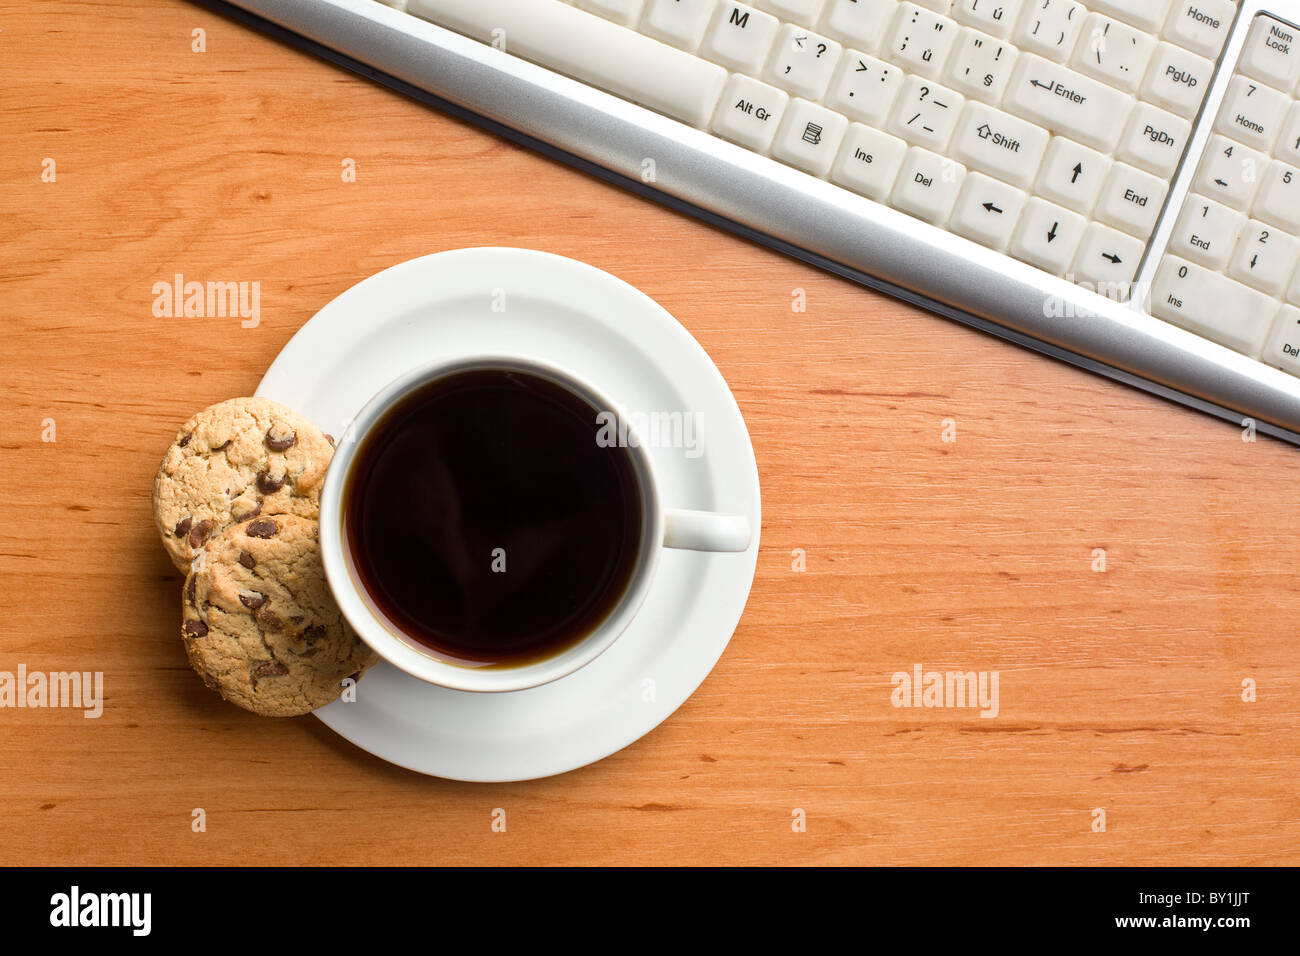 Petit-déjeuner en bureau : cookies et café Banque D'Images